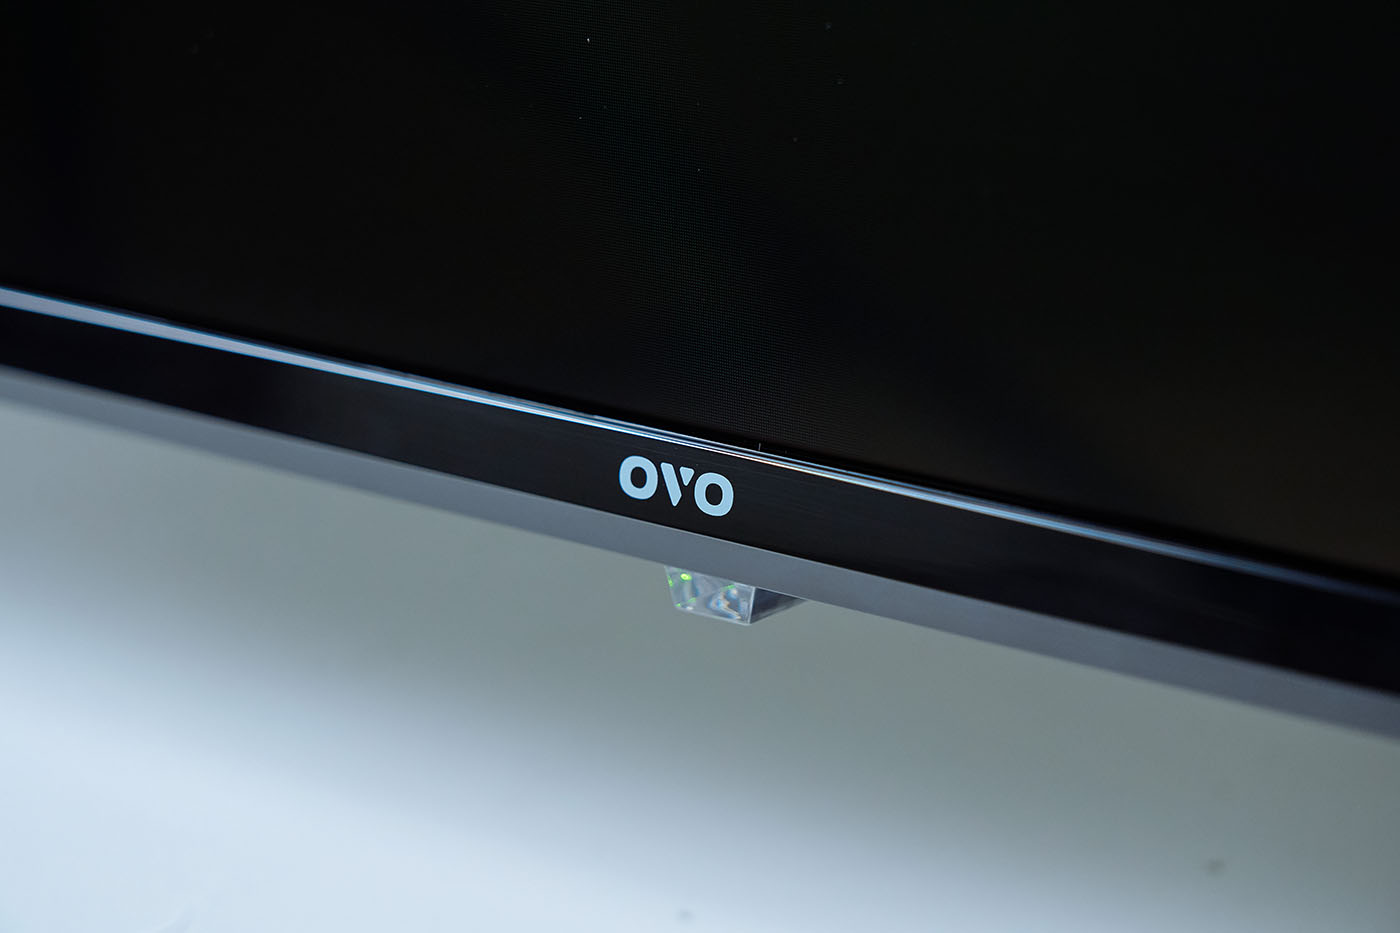 螢幕下方�央則有相當低調的 OVO 商標，以及最下方的 LED 指示燈。 ▲ 採用亮面處理的腳座以輕量化�計為主，但仍擁有十分穩固的支撐性，並為 T65 帶來十分高級的質感。